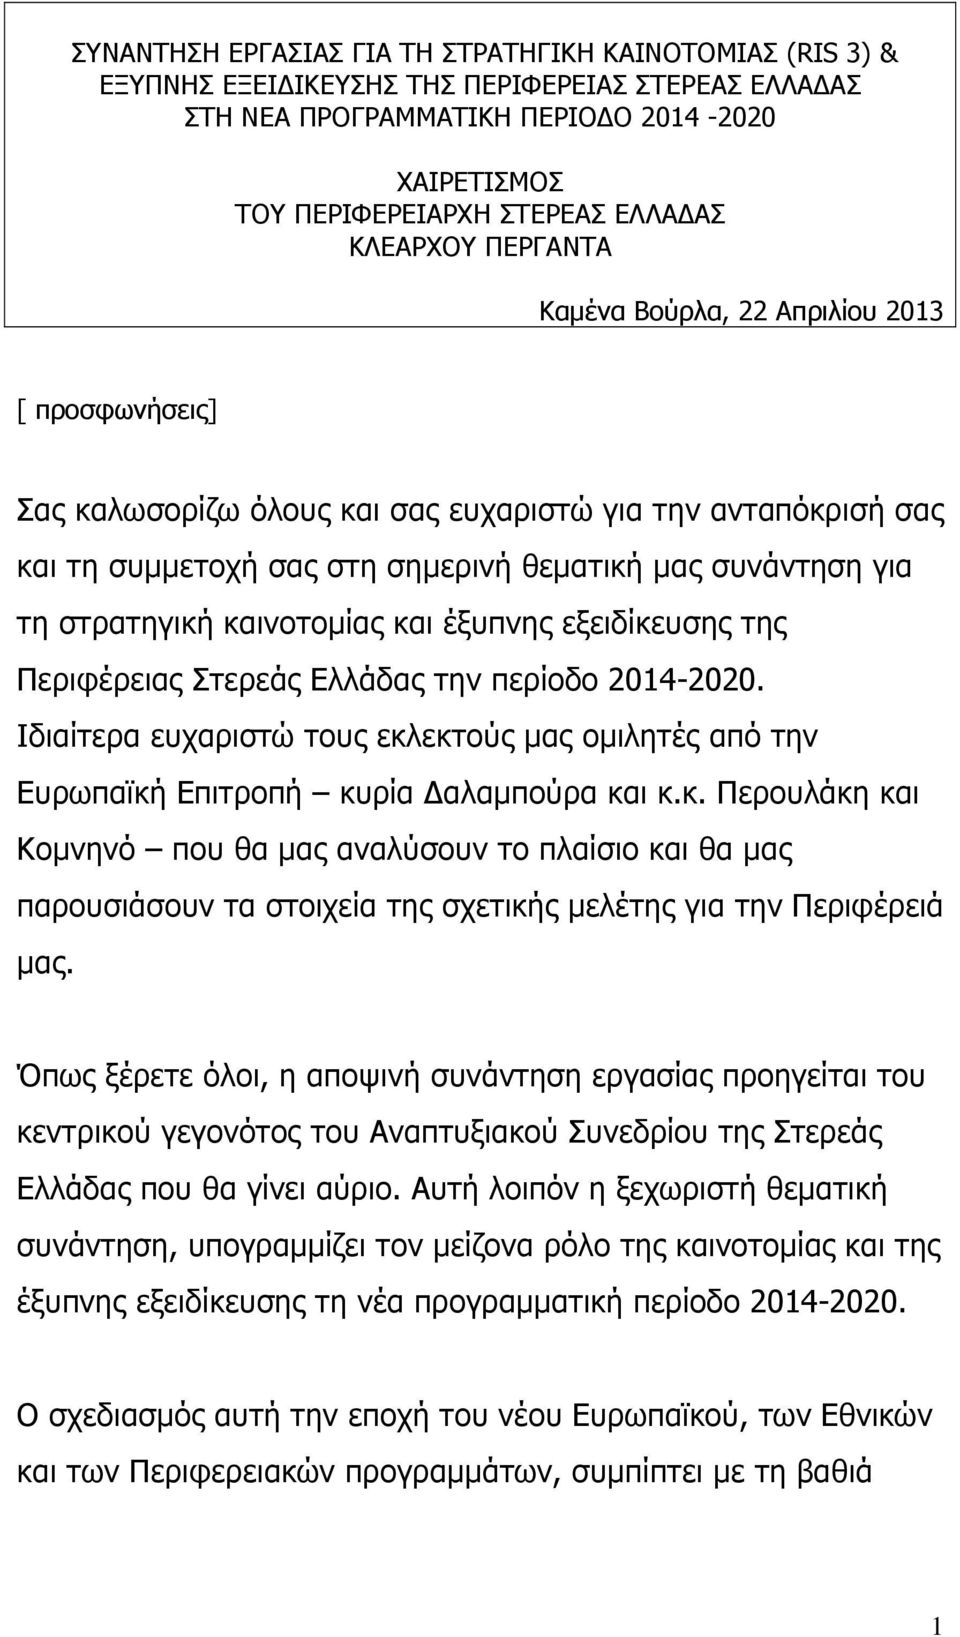 στρατηγική καινοτοµίας και έξυπνης εξειδίκευσης της Περιφέρειας Στερεάς Ελλάδας την περίοδο 2014-2020. Ιδιαίτερα ευχαριστώ τους εκλεκτούς µας οµιλητές από την Ευρωπαϊκή Επιτροπή κυρία αλαµπούρα και κ.